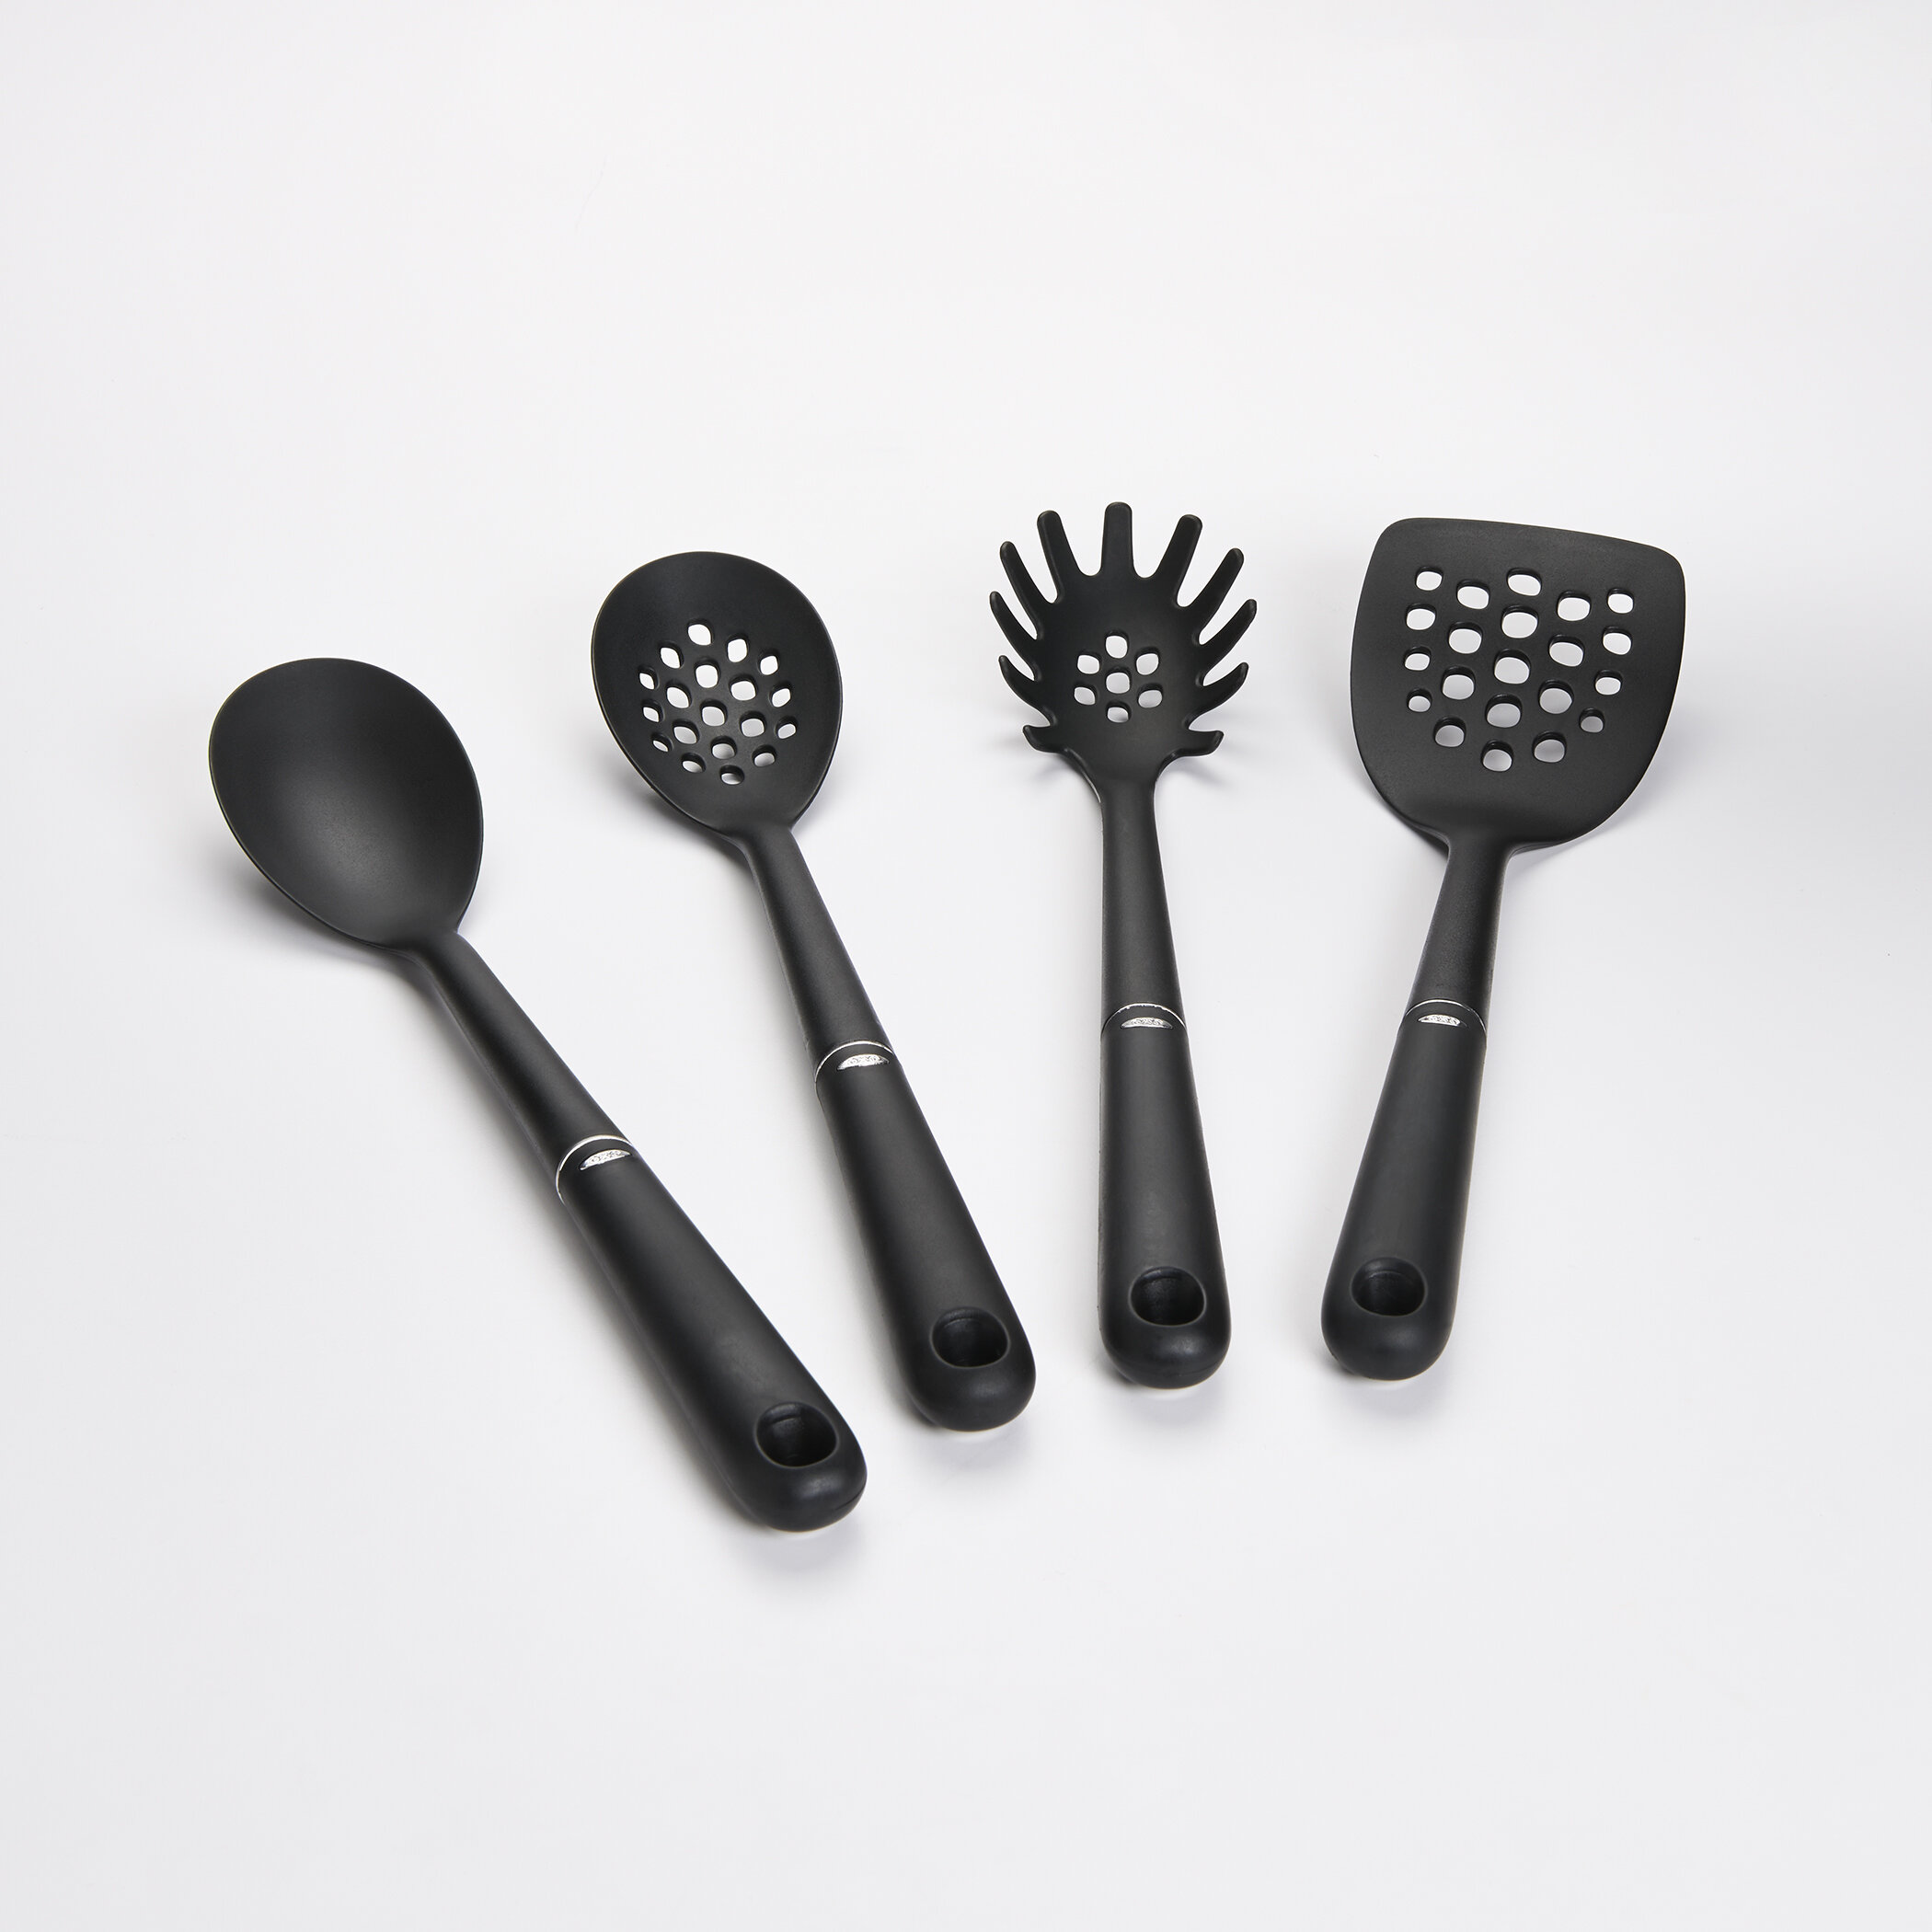 QXXSJ 5 -Piece Silicone Cooking Spoon Set